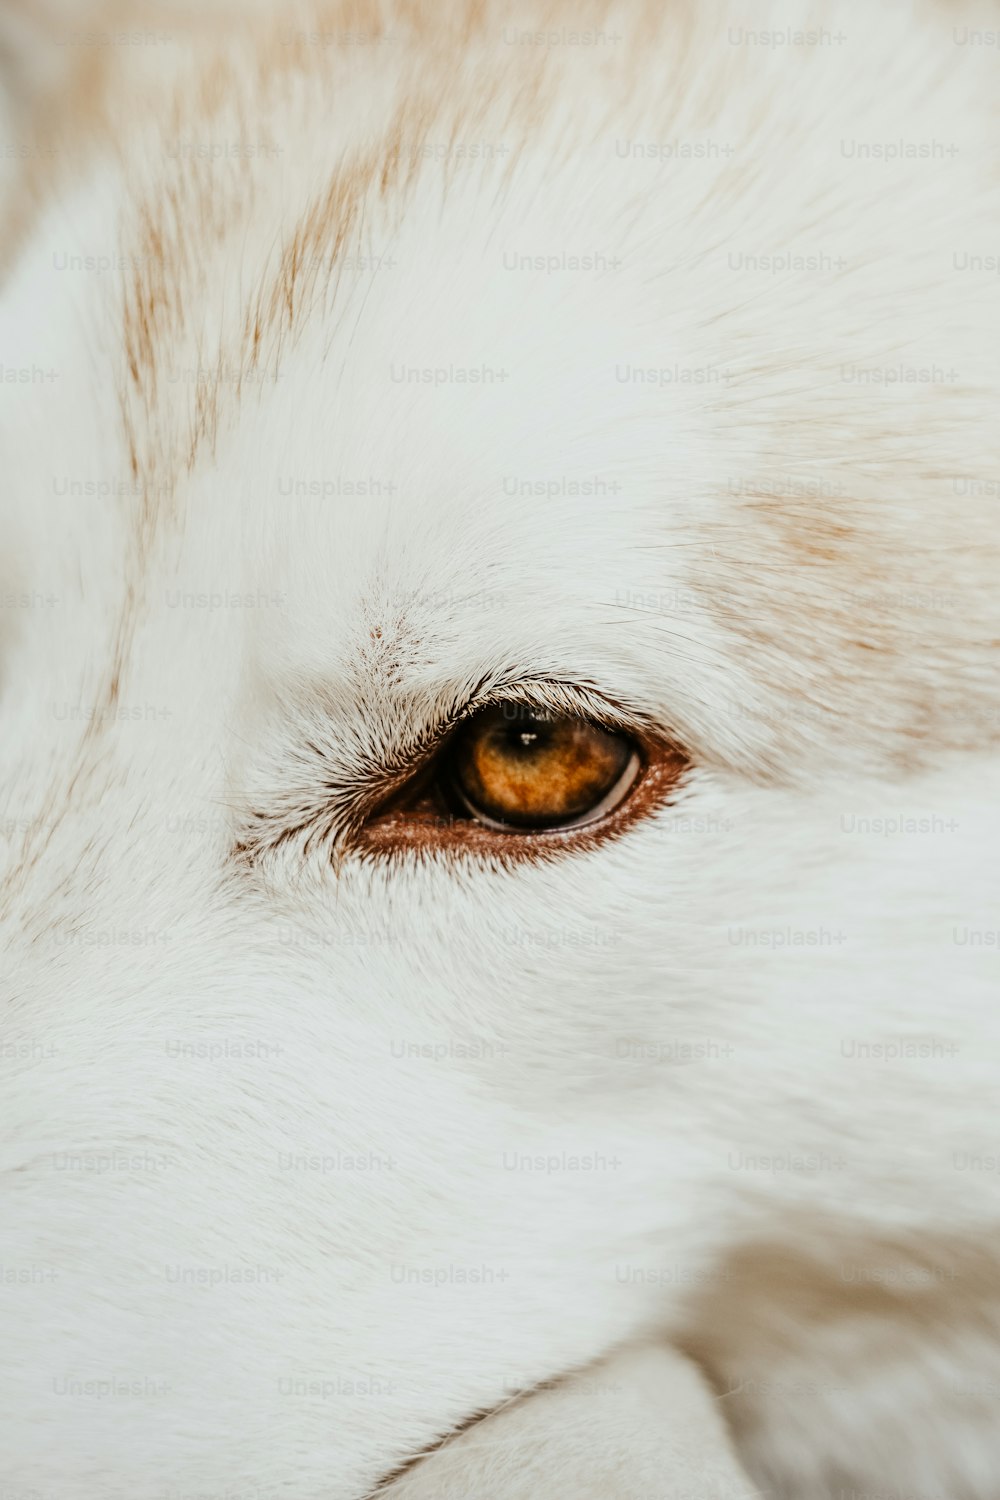 Estados Unidos Dificil Decepcionado 1K+ Imágenes de Lobo Blanco | Descargar imágenes gratis en Unsplash